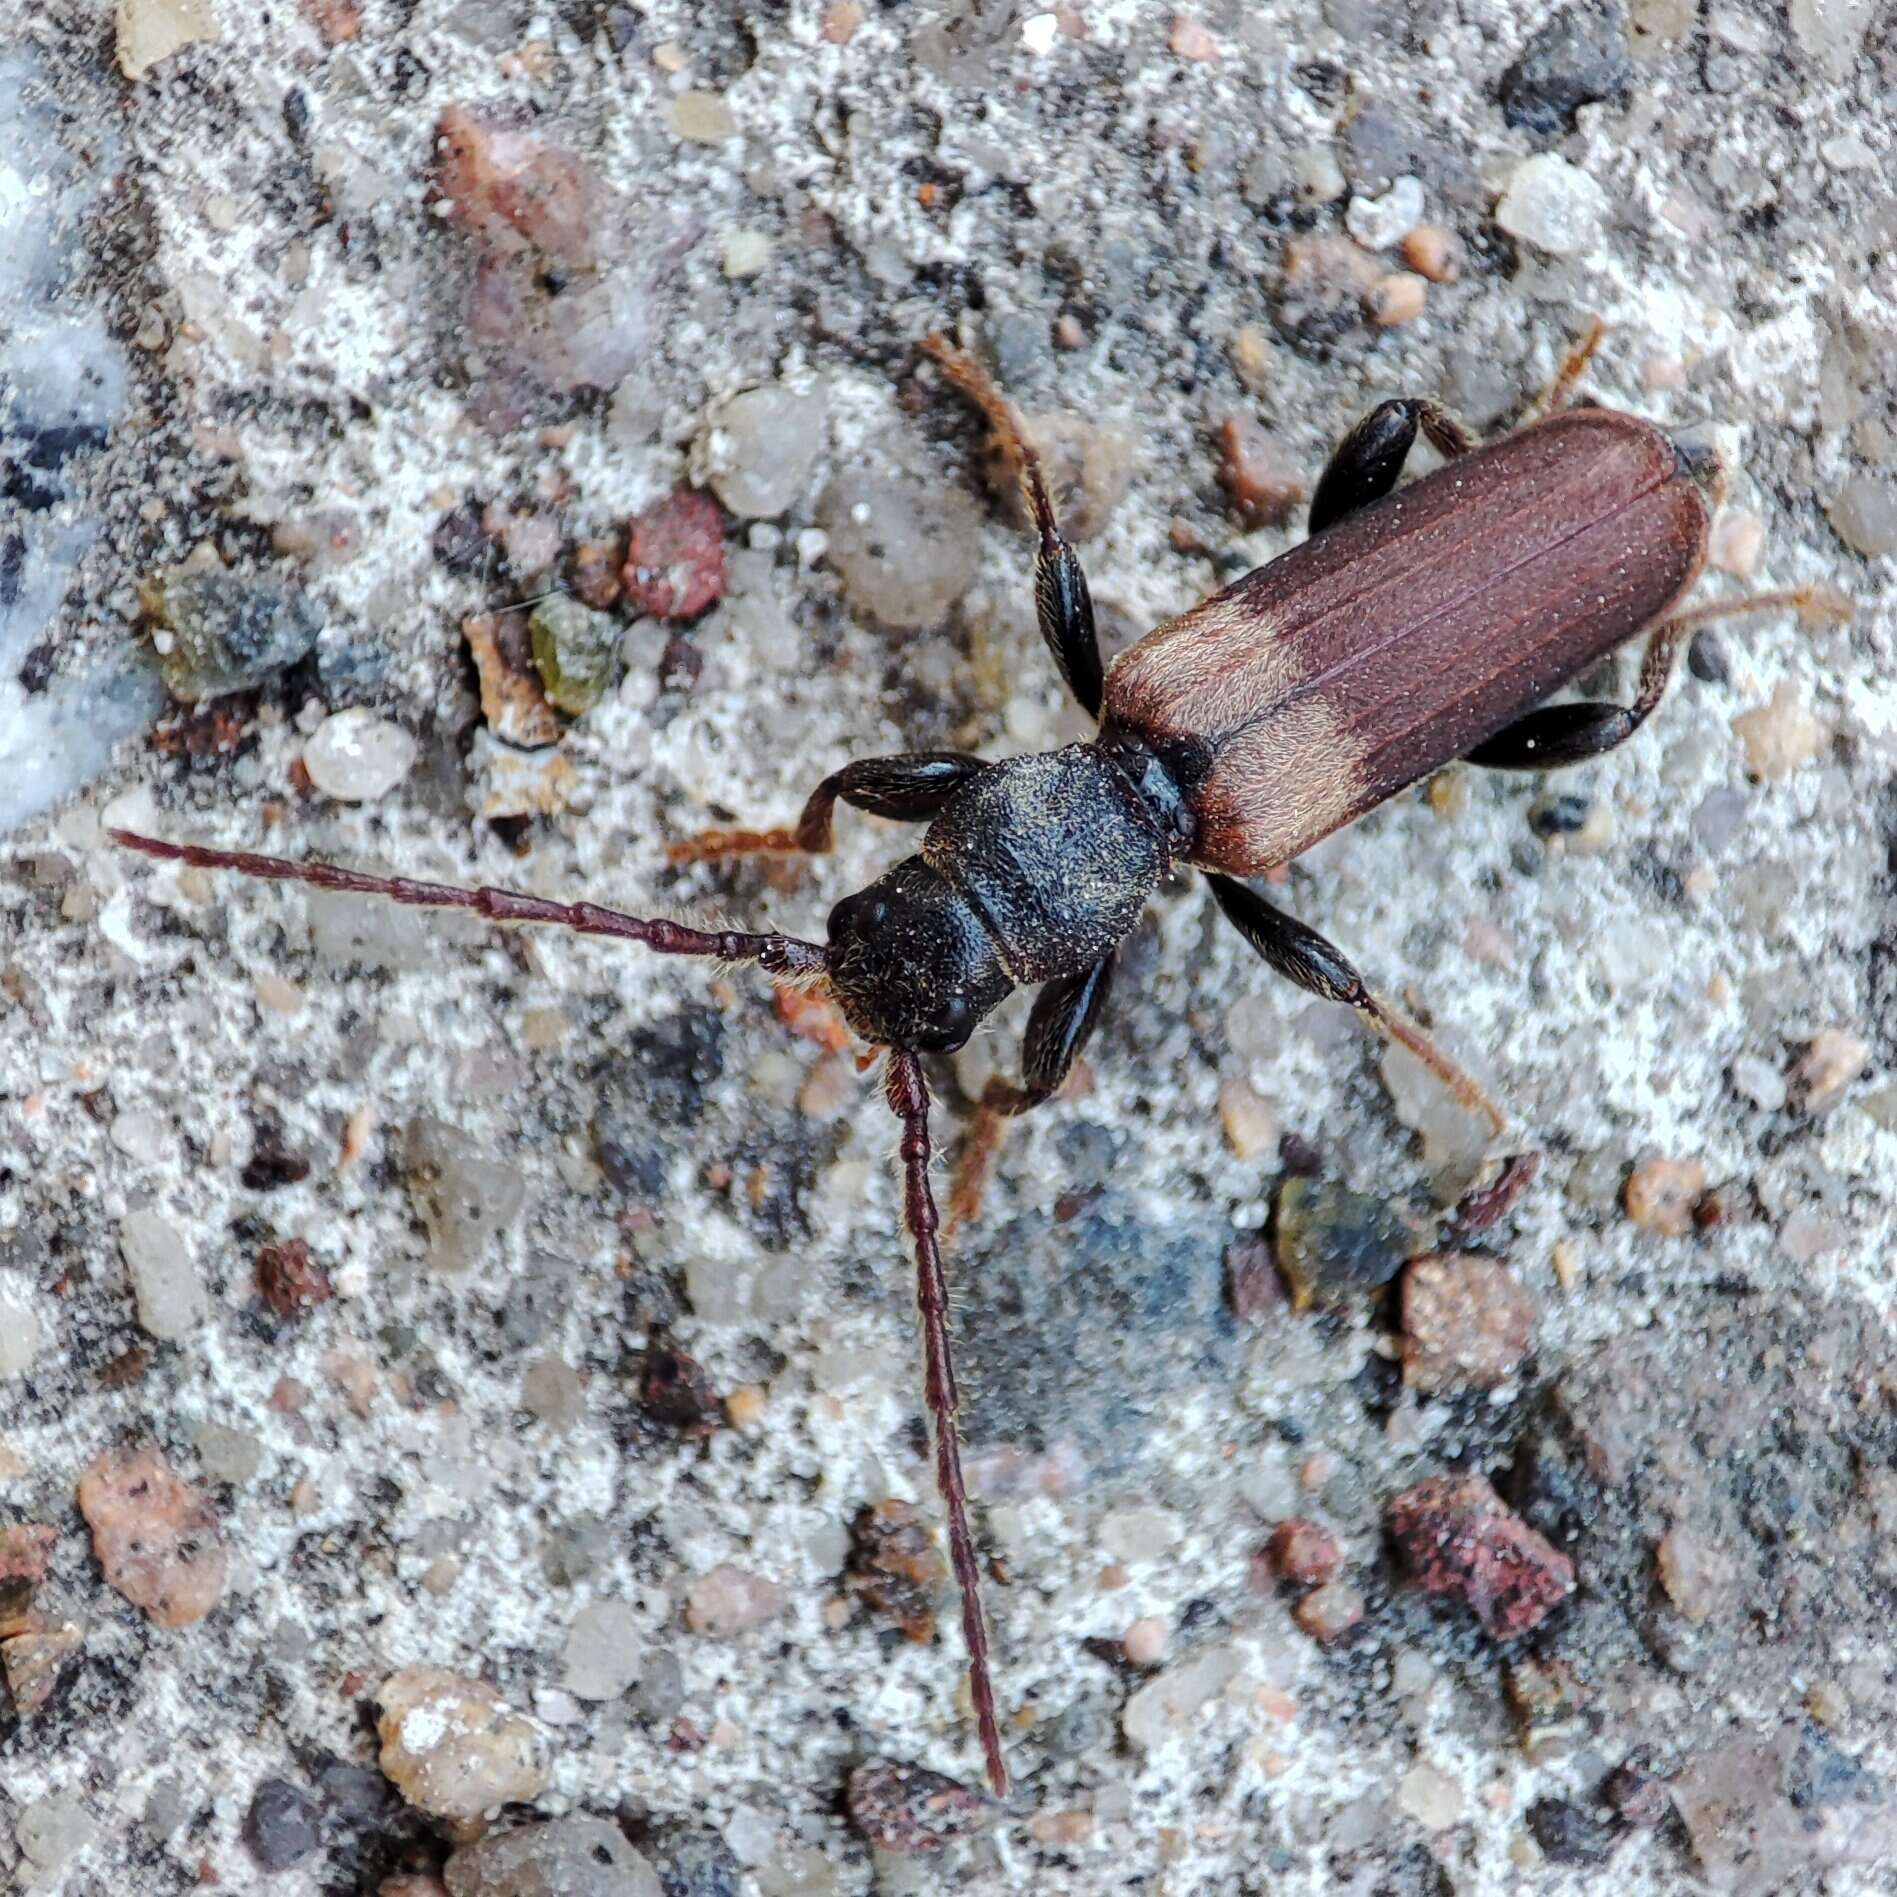 Image of Brown spruce longhorn beetle